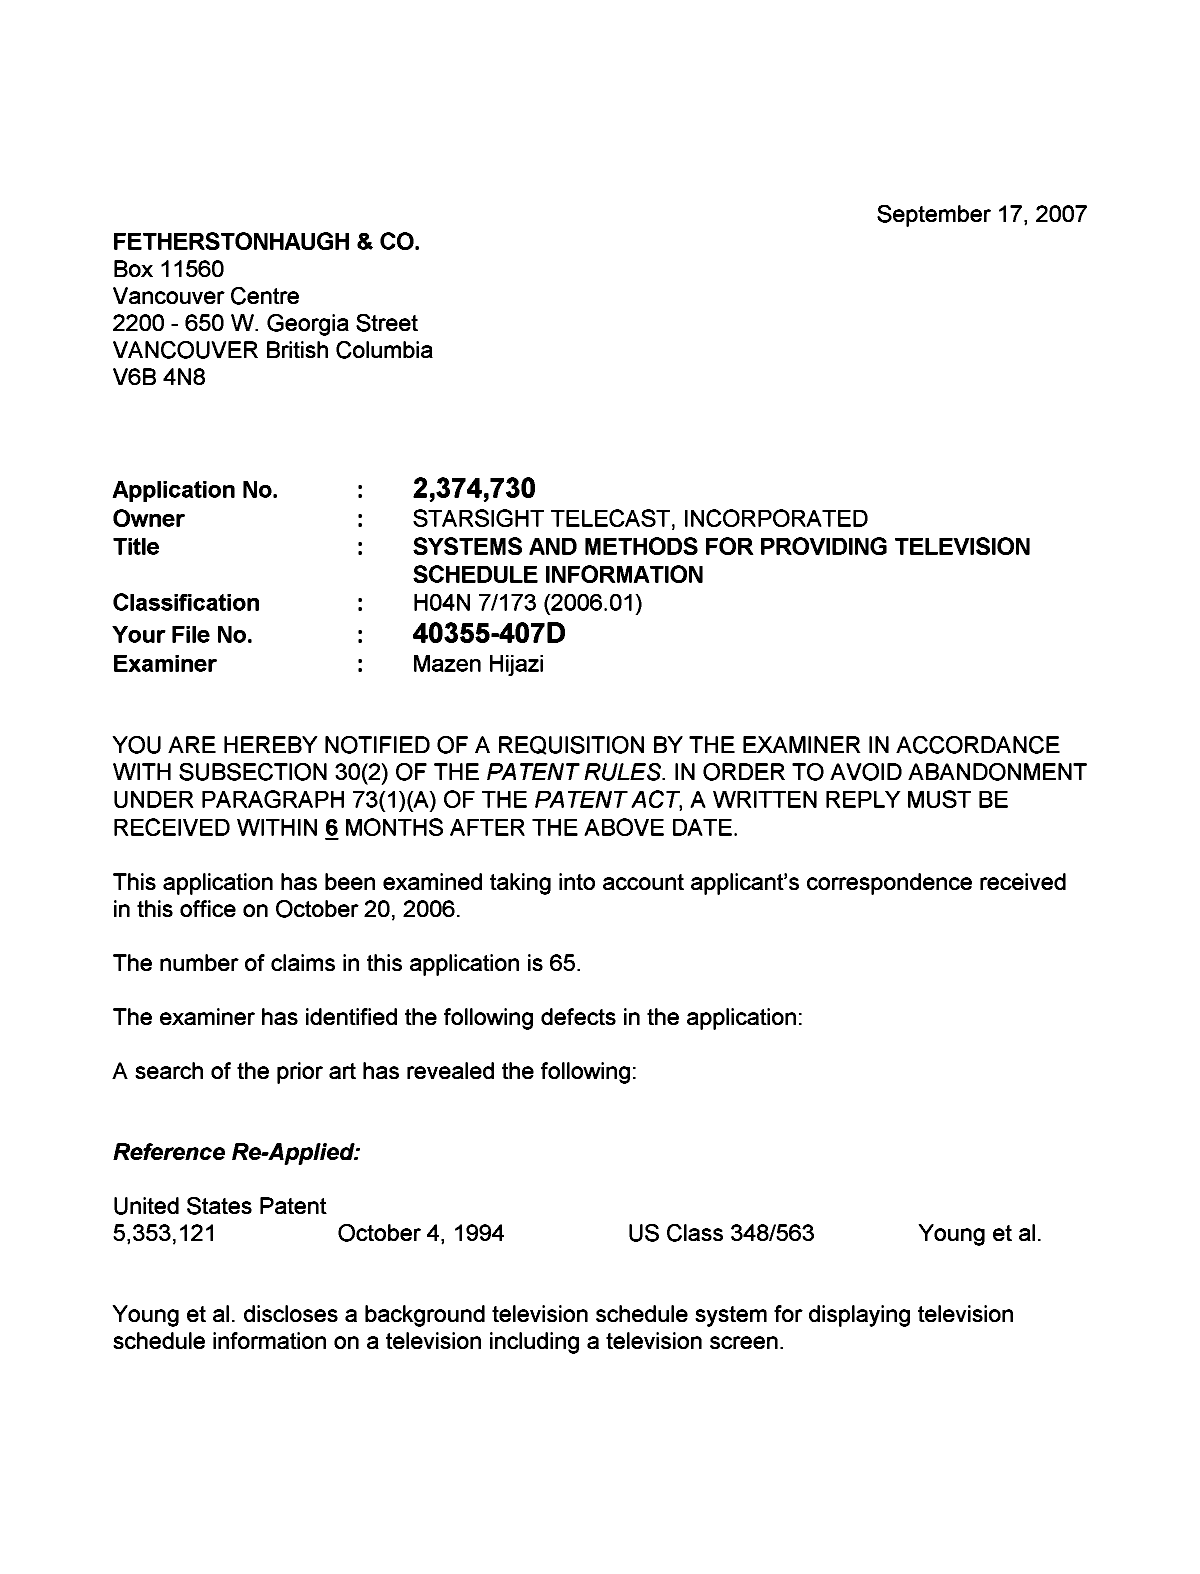 Document de brevet canadien 2374730. Poursuite-Amendment 20070917. Image 1 de 3